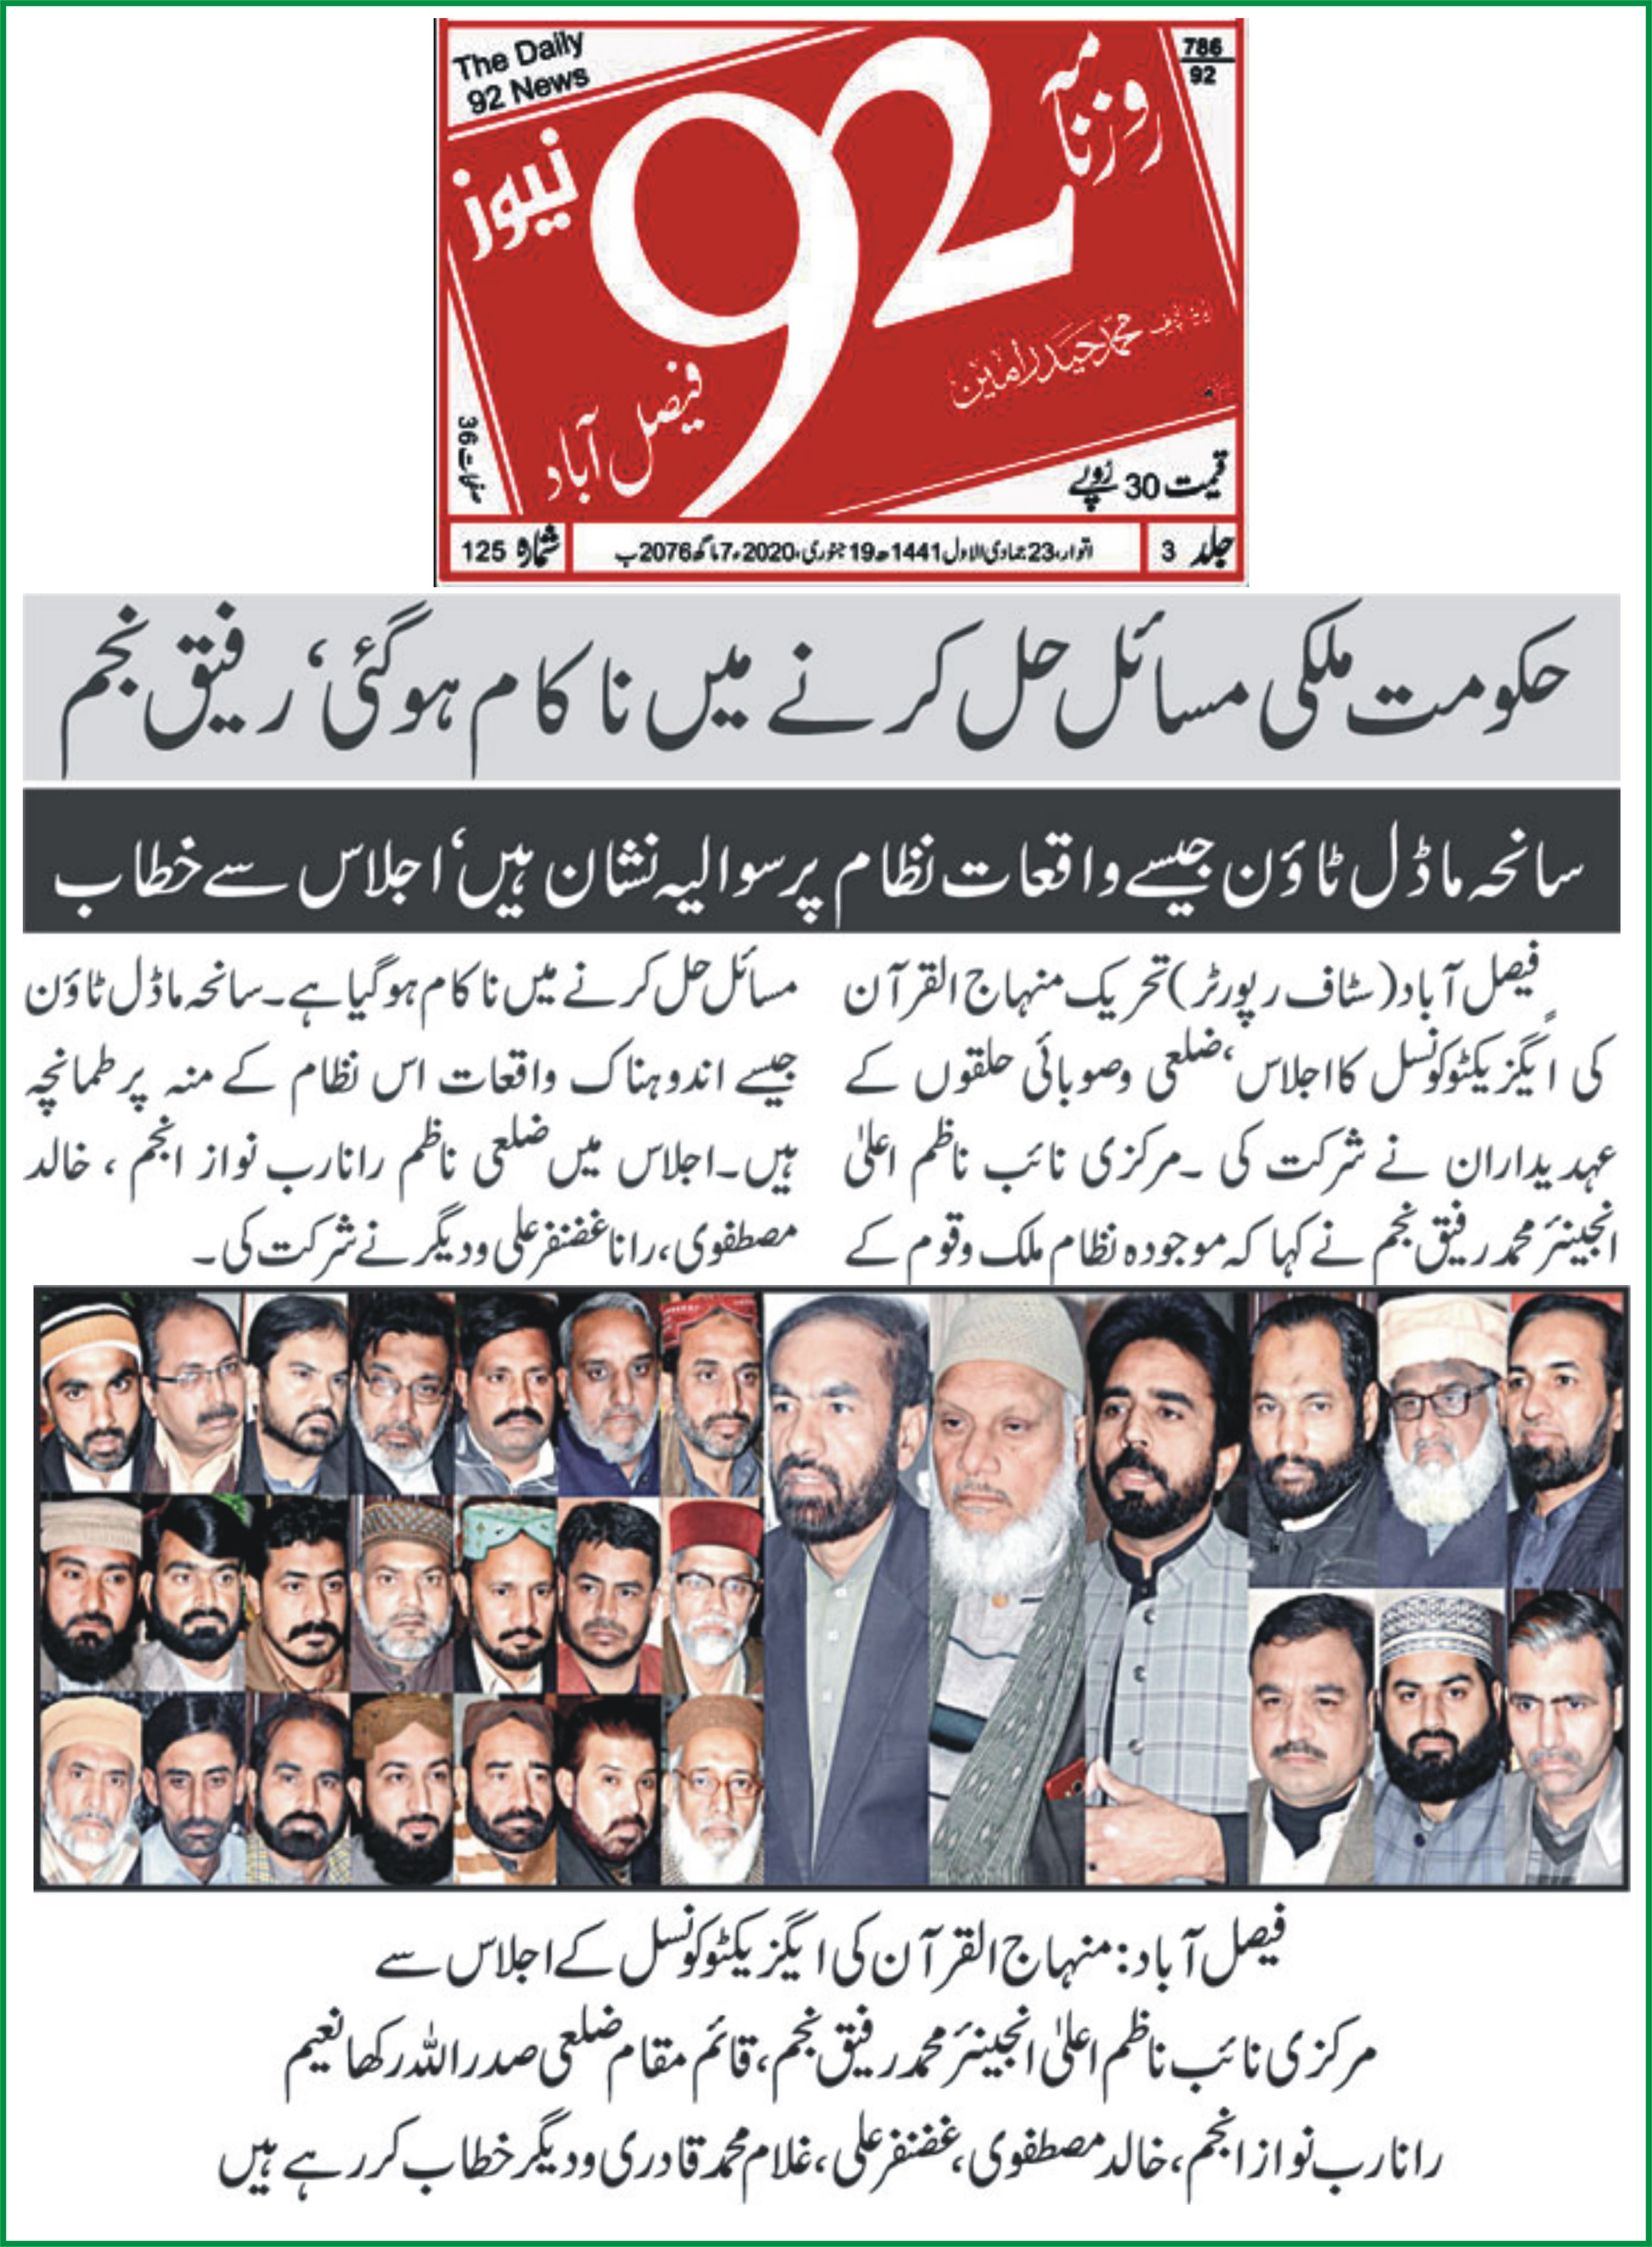 بـمنظّمة منهاج القرآن العالمية Minhaj-ul-Quran  Print Media Coverage طباعة التغطية الإعلامية Daily 92 News page 9